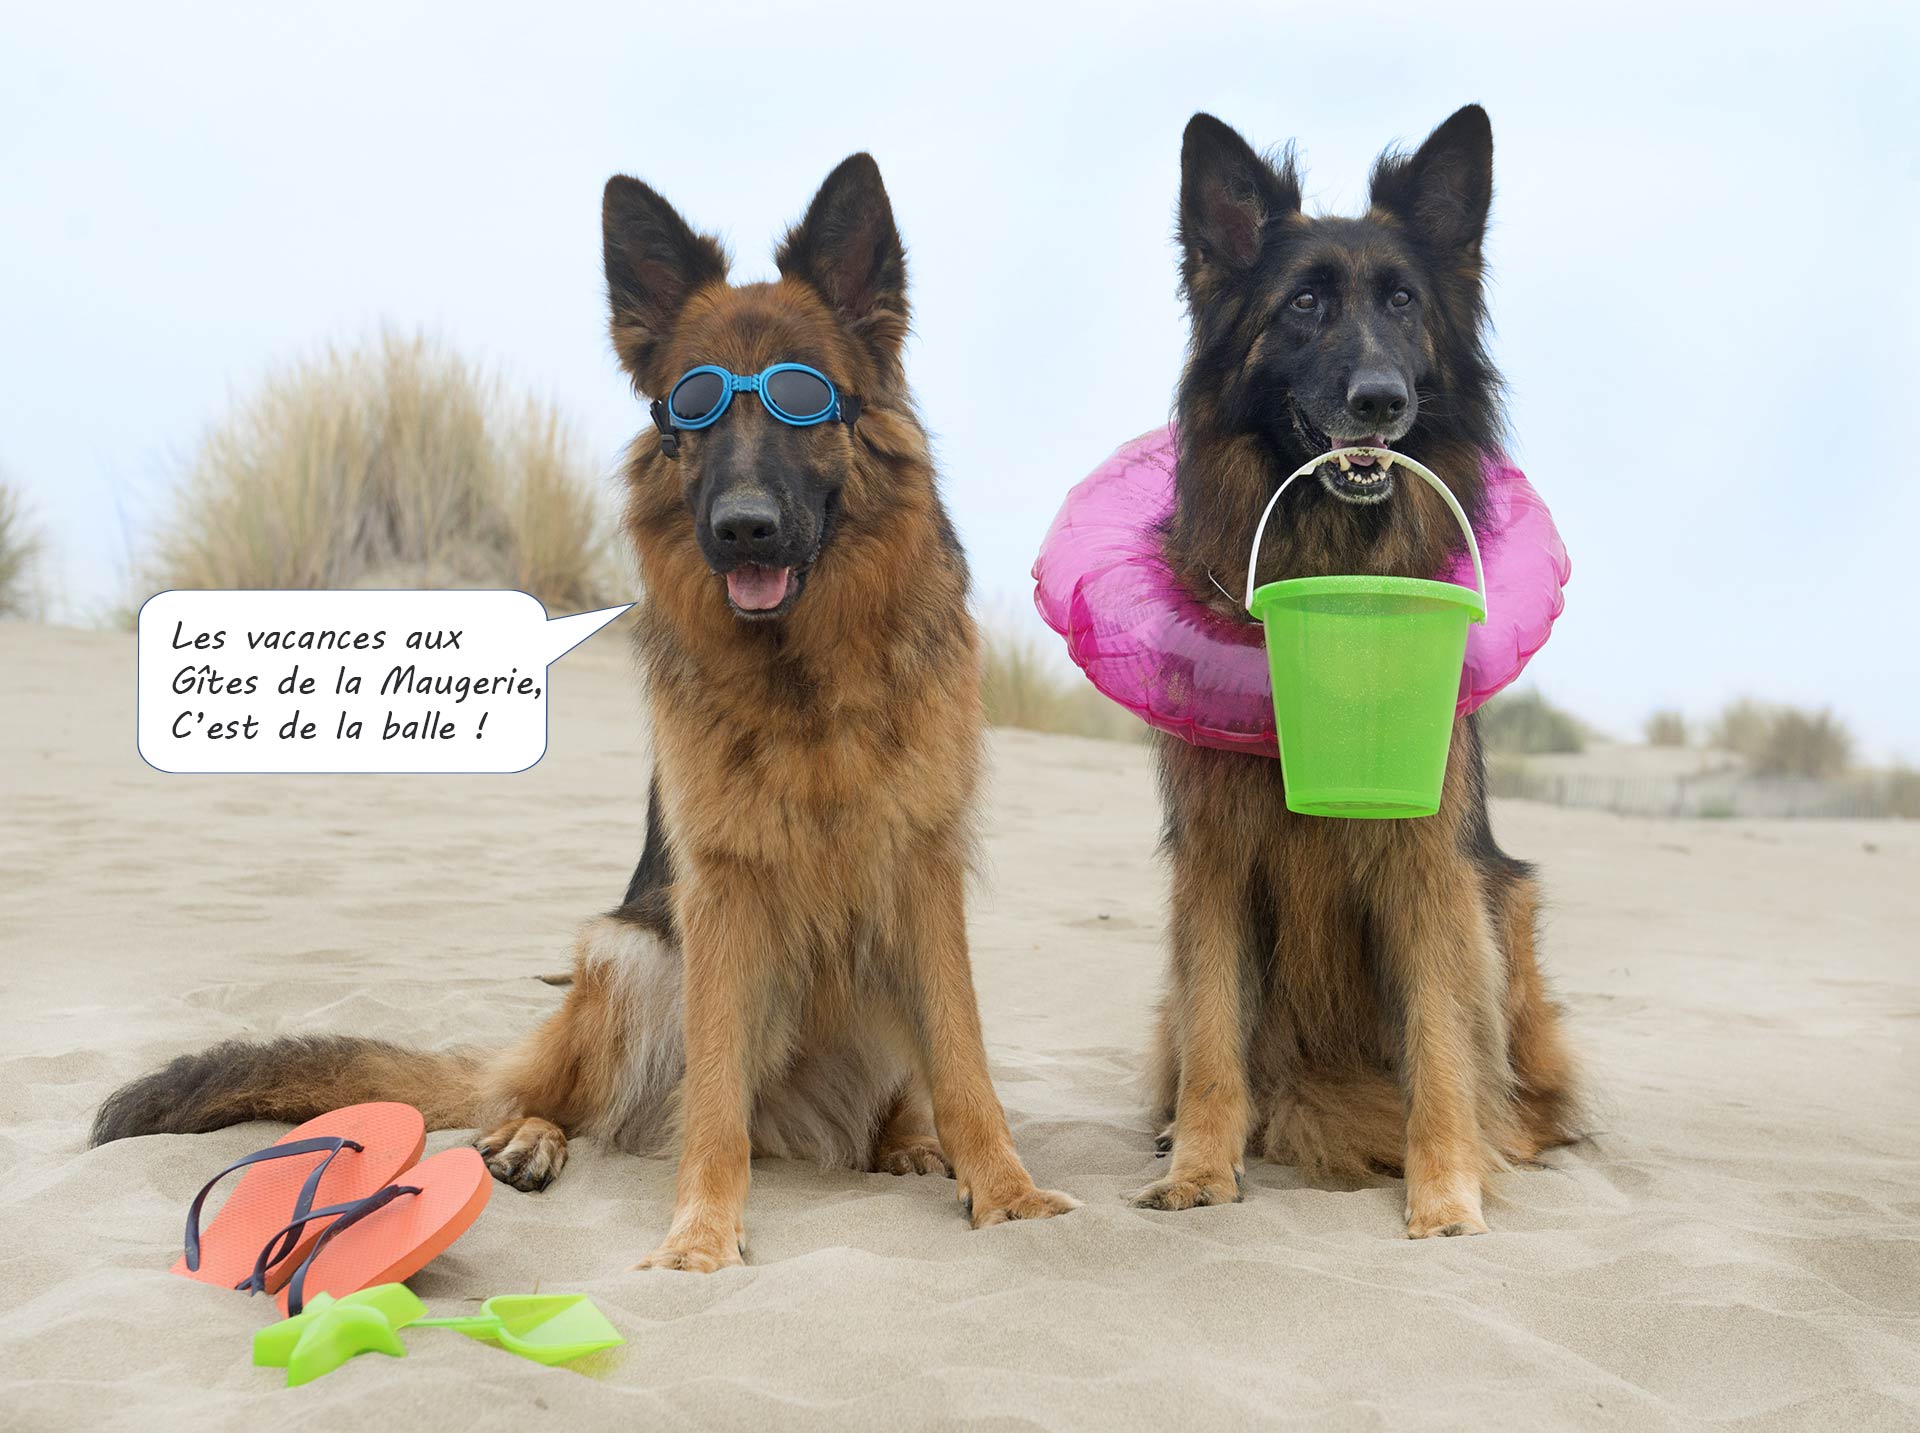 Un Gîte de bord de mer en Vendée qui accepte les chiens gratuitement : L’aventure de deux chiens en vacances.